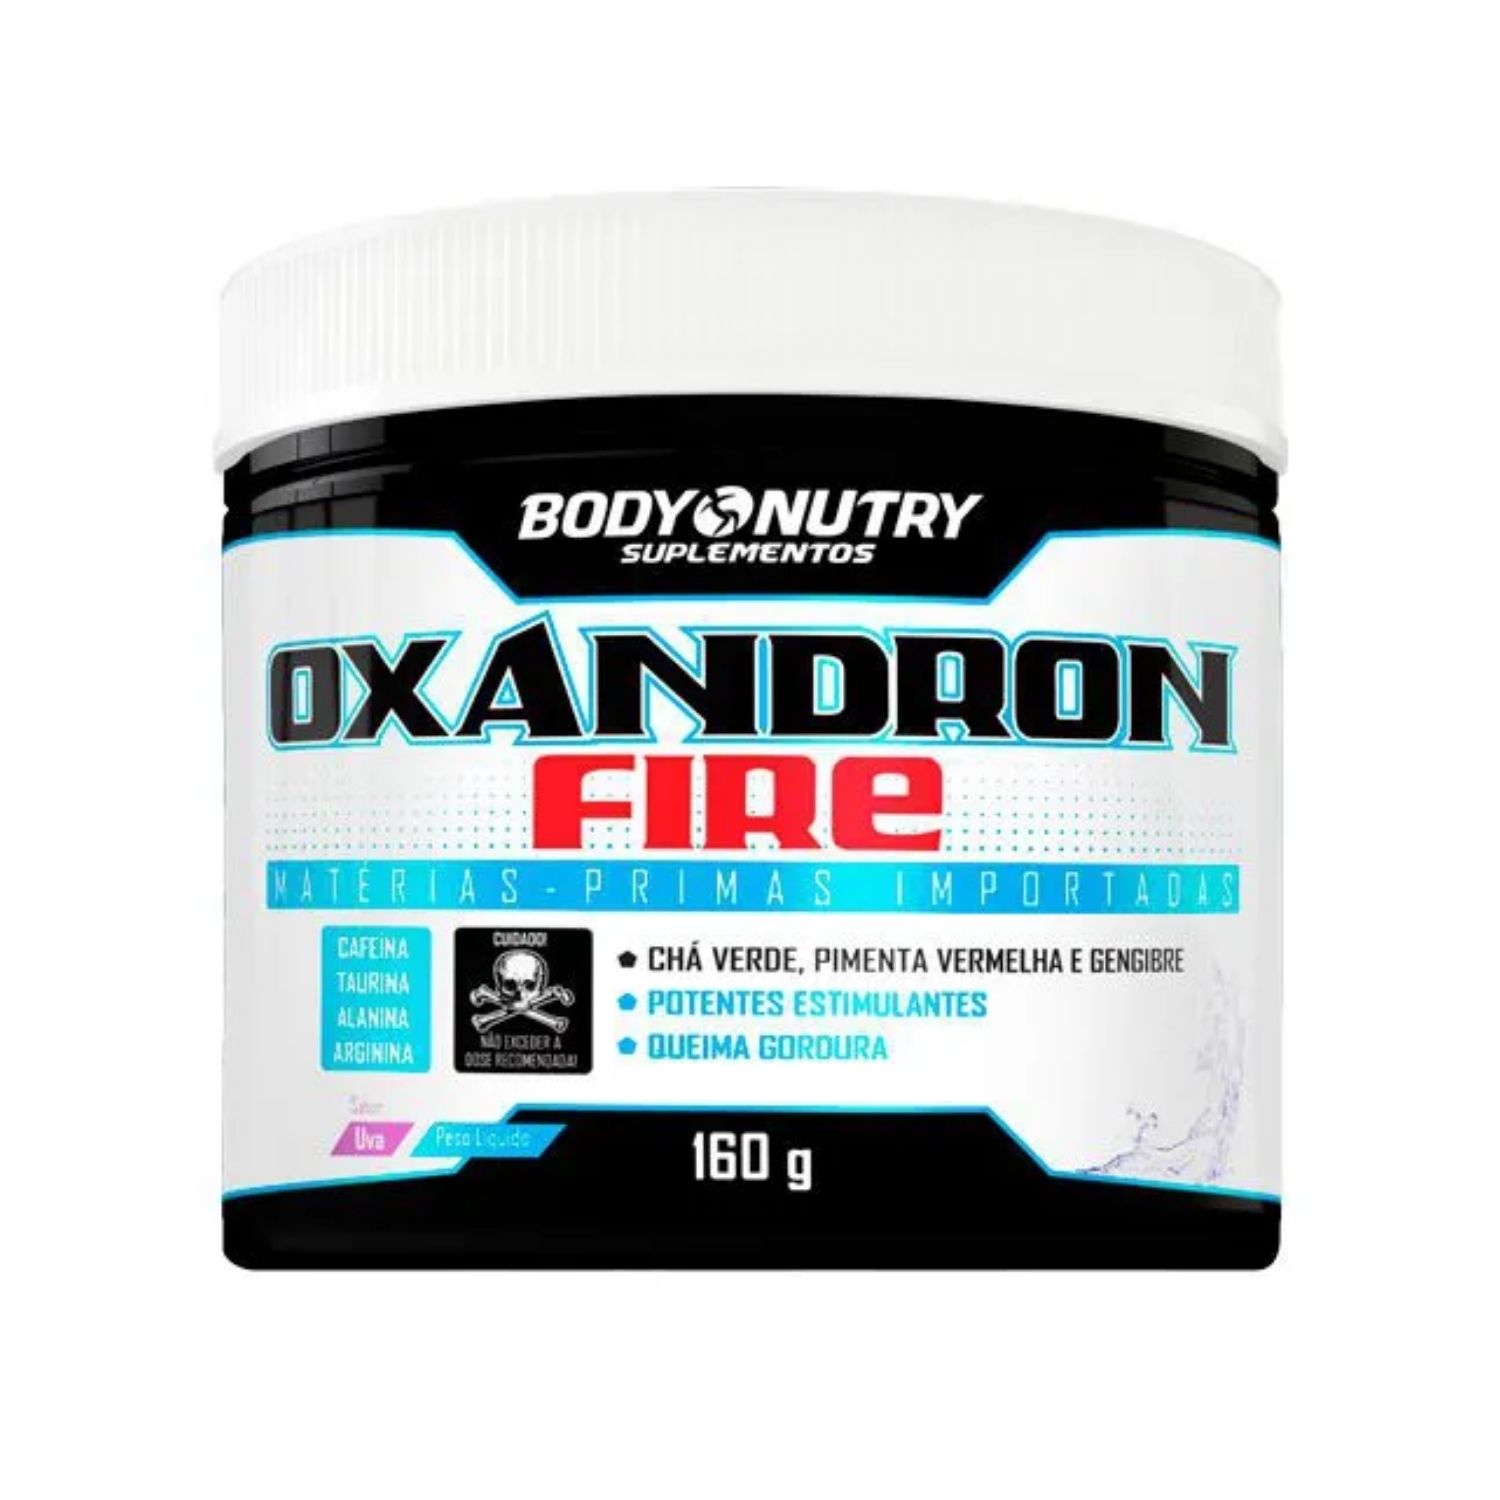 Oxadron Fire 160g Body Nutry